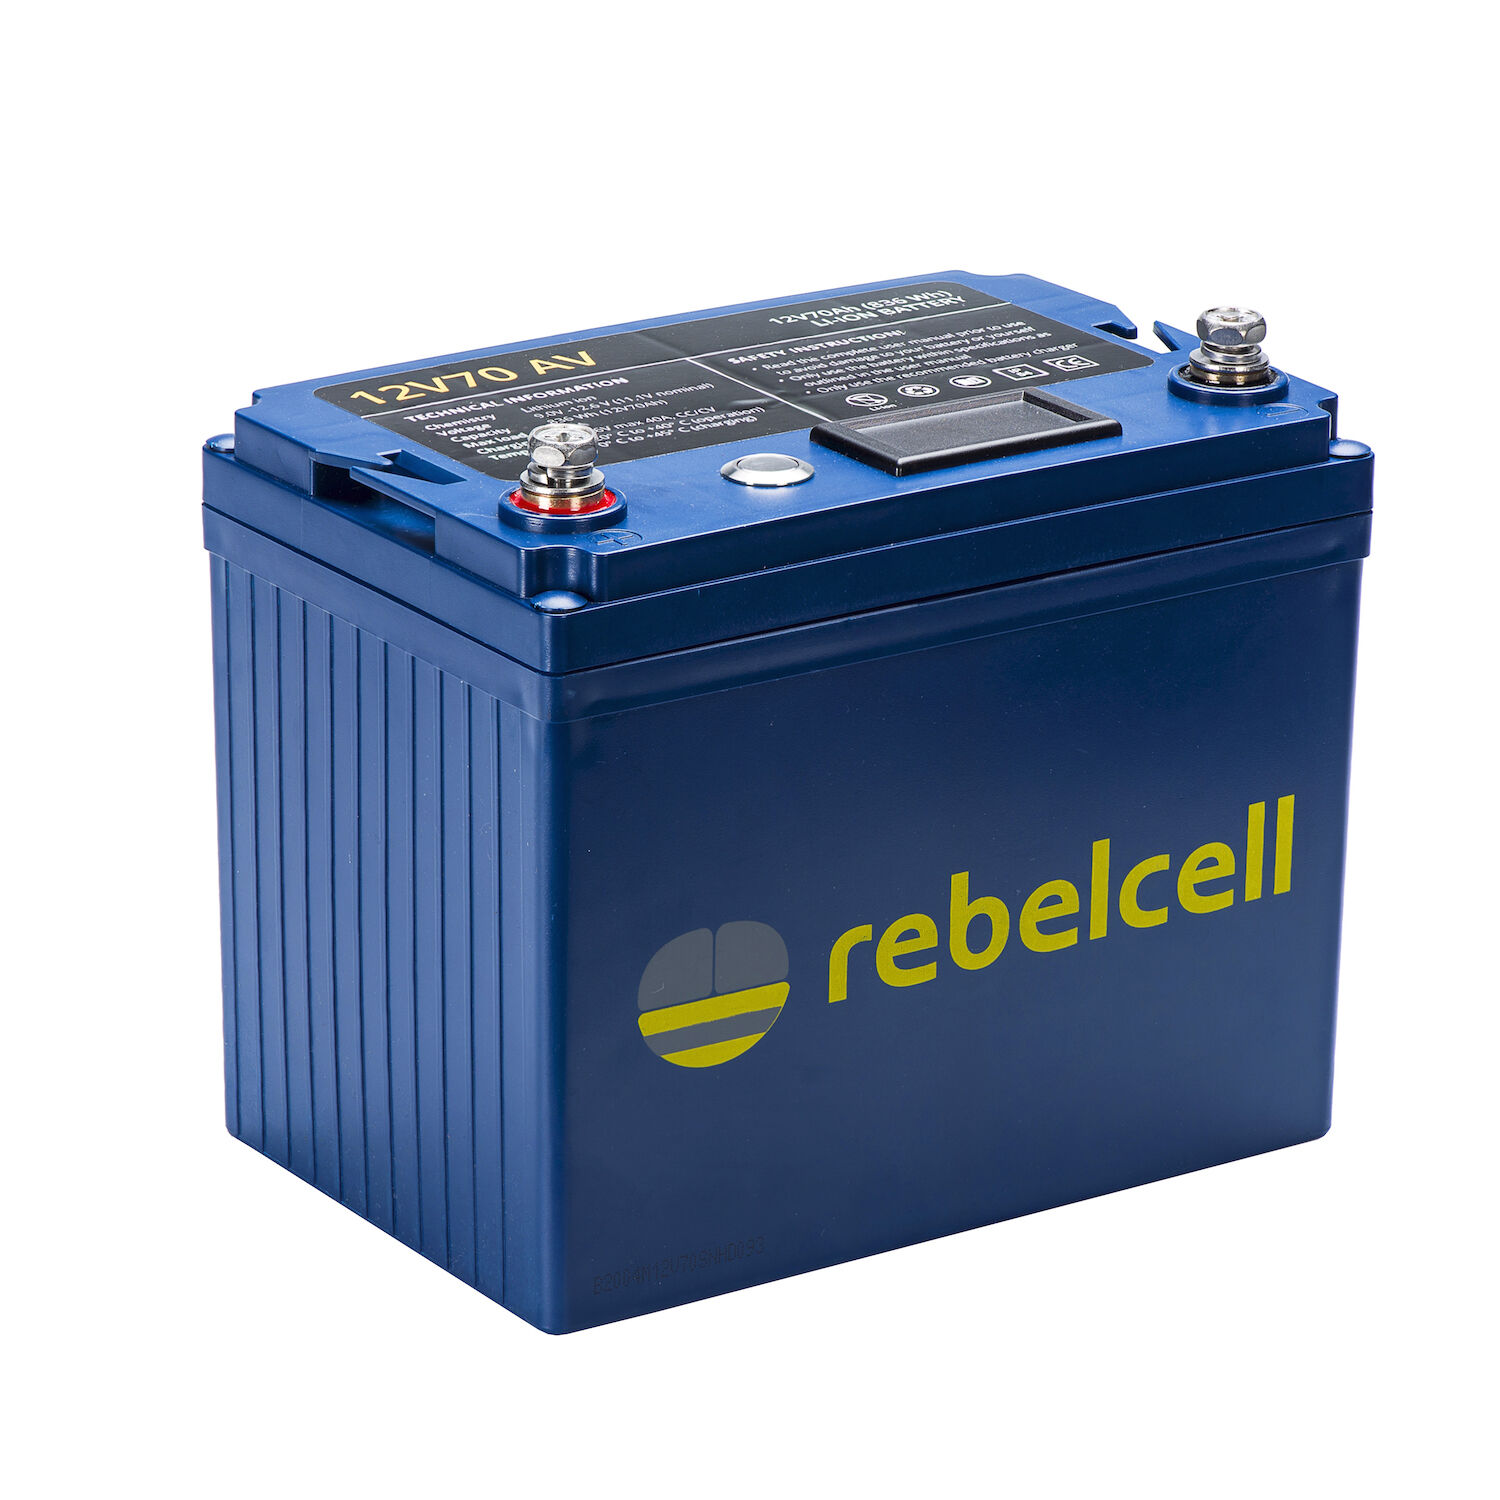 RebelCell 12V70 AV Lithium Batterie (12V 70Ah) 863Wh